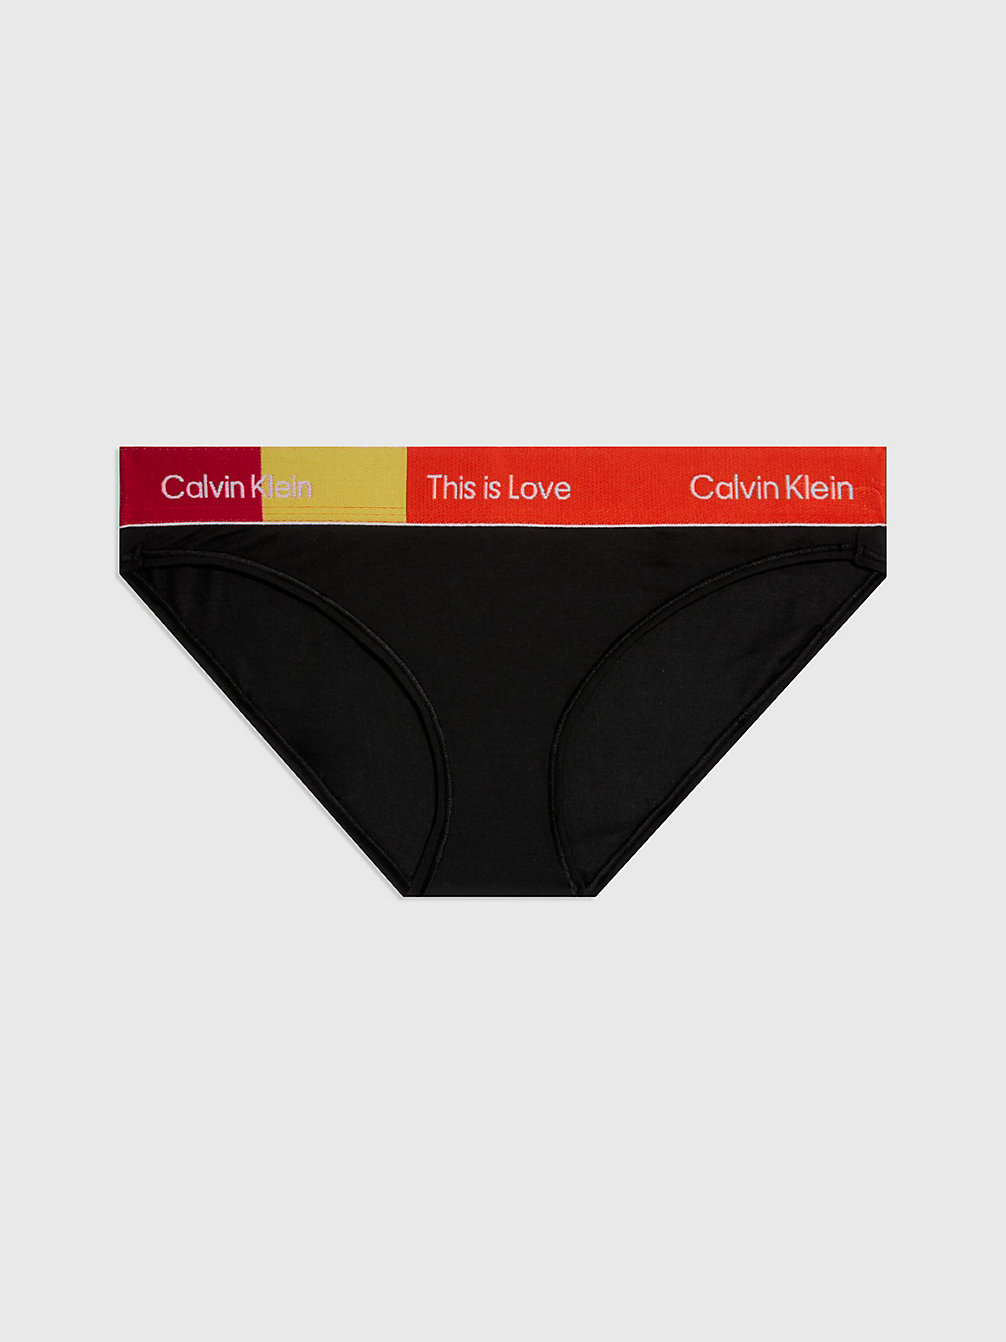 BLACK > Slips - Pride > undefined Damen - Calvin Klein